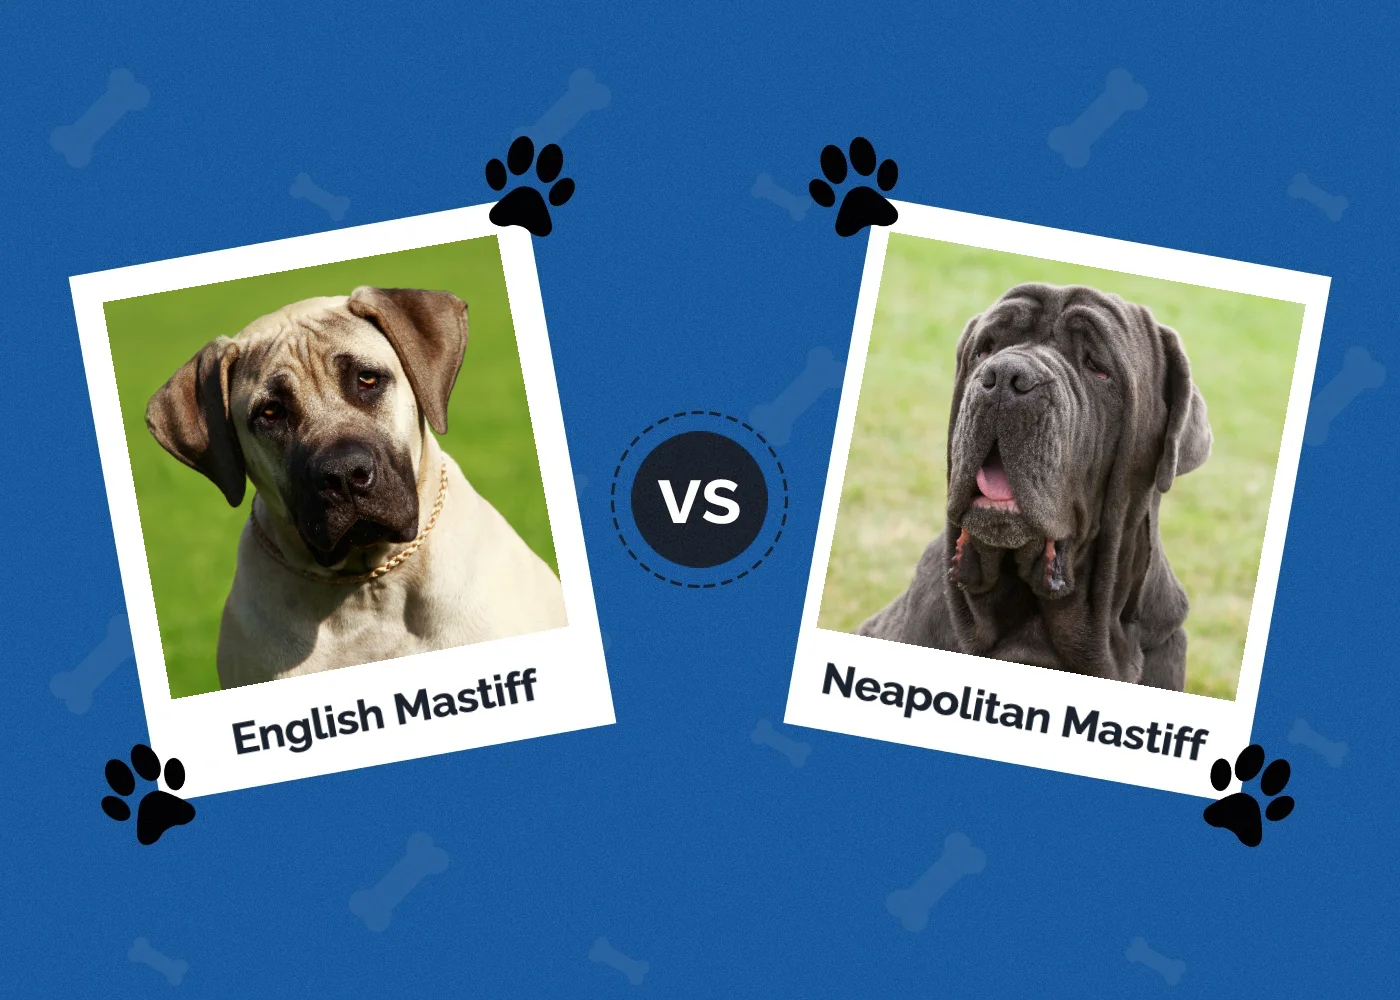 English Mastiff vs Neapolitan Mastiff - Featured Image